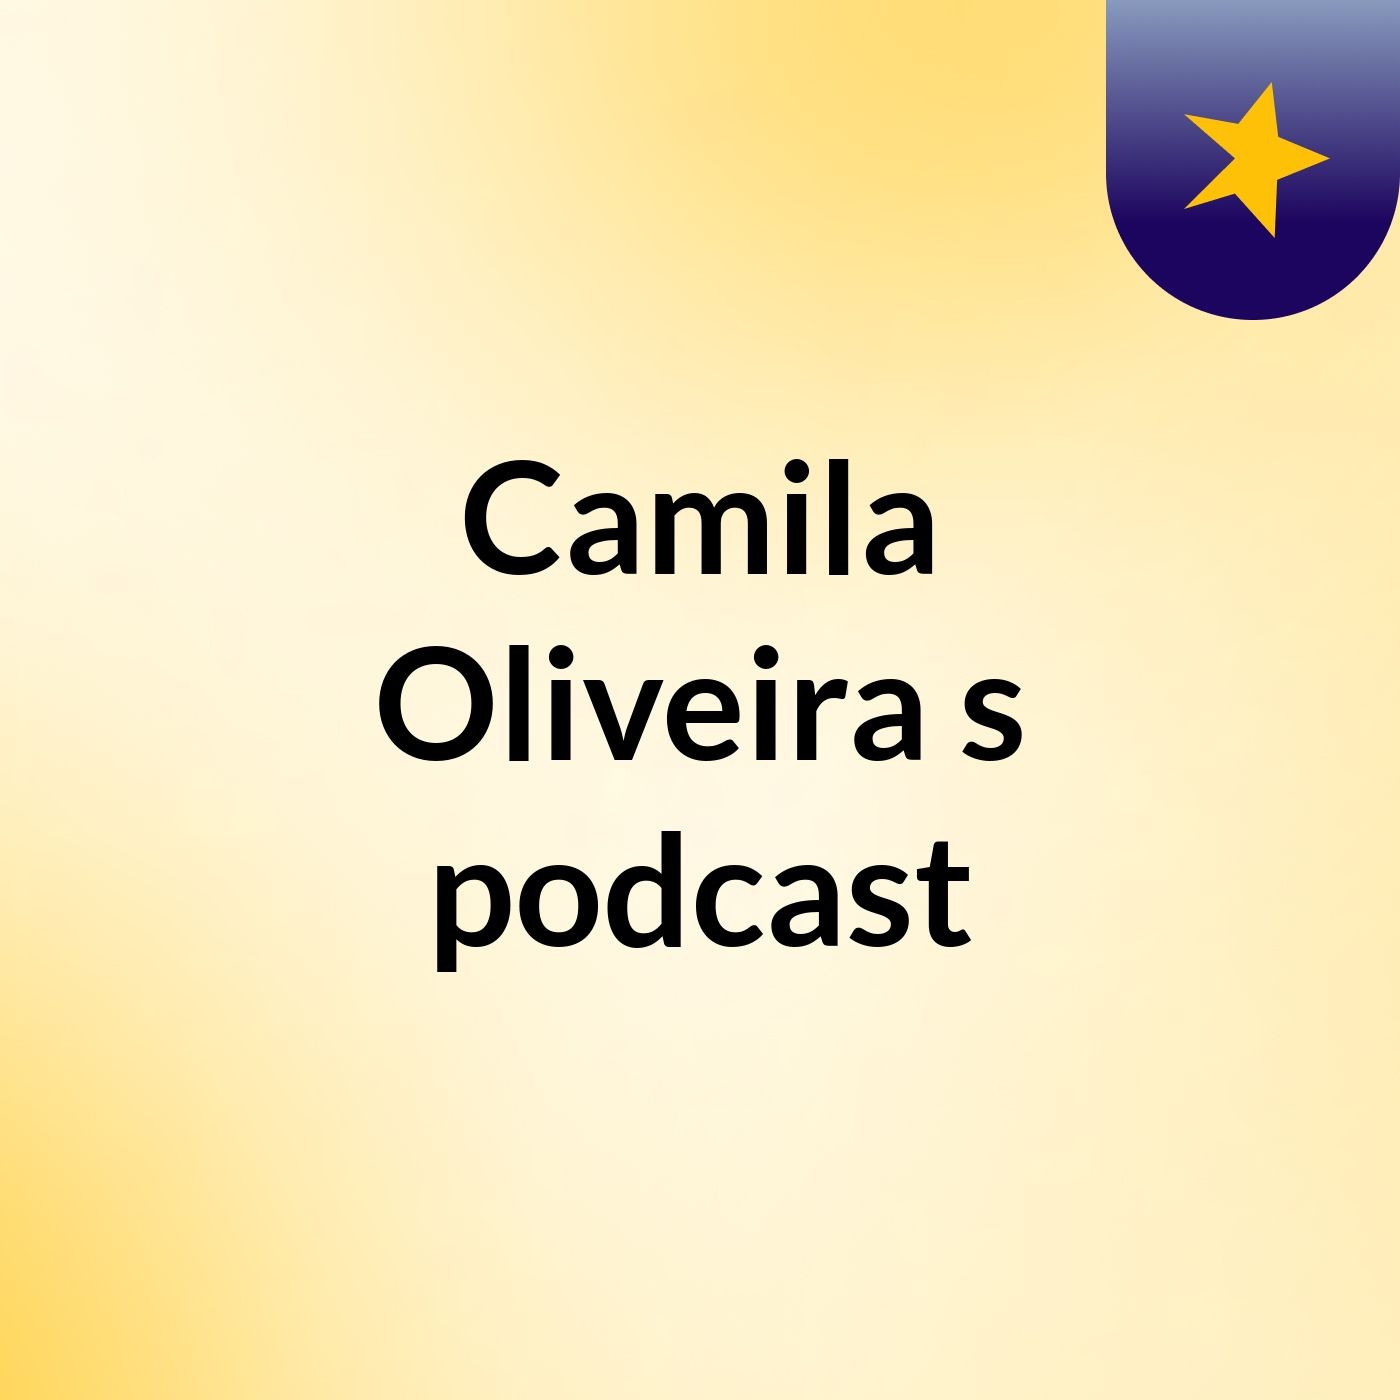 Camila Oliveira's podcast